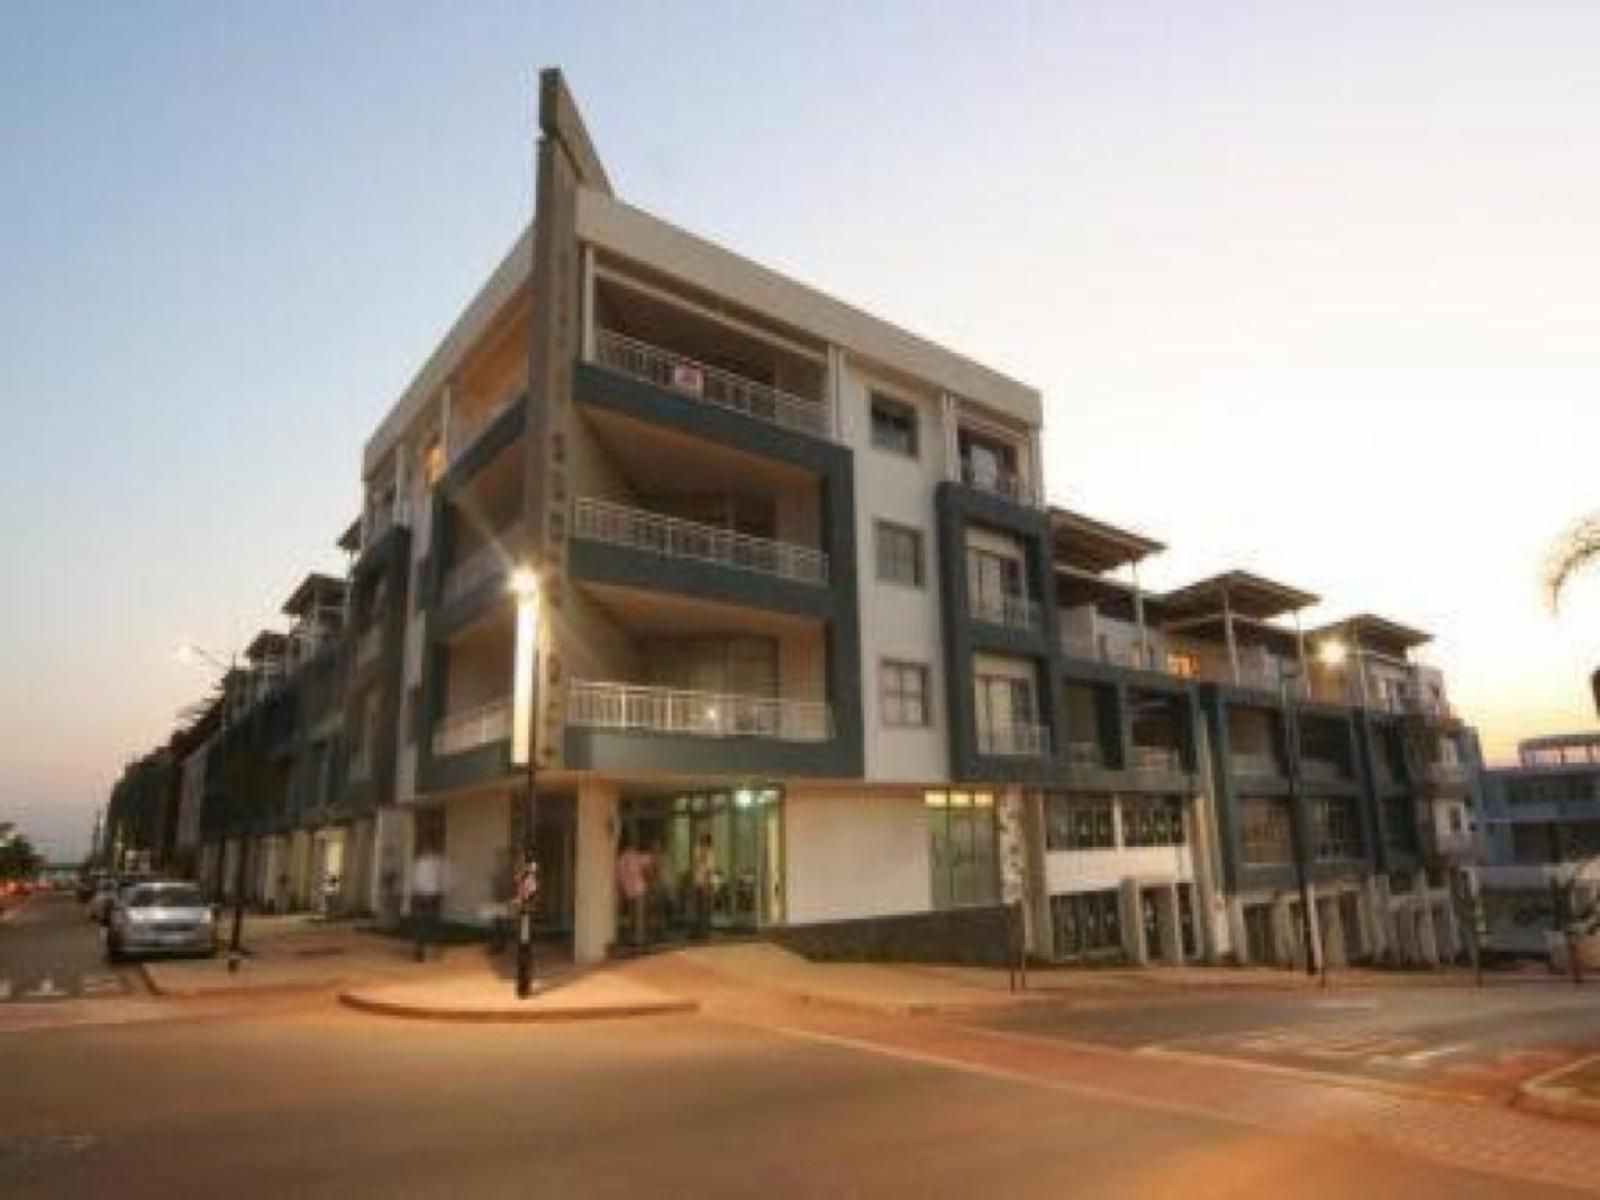 Zenith Apartments La Loggia Umhlanga Ridge Umhlanga Kwazulu Natal South Africa Building, Architecture, House